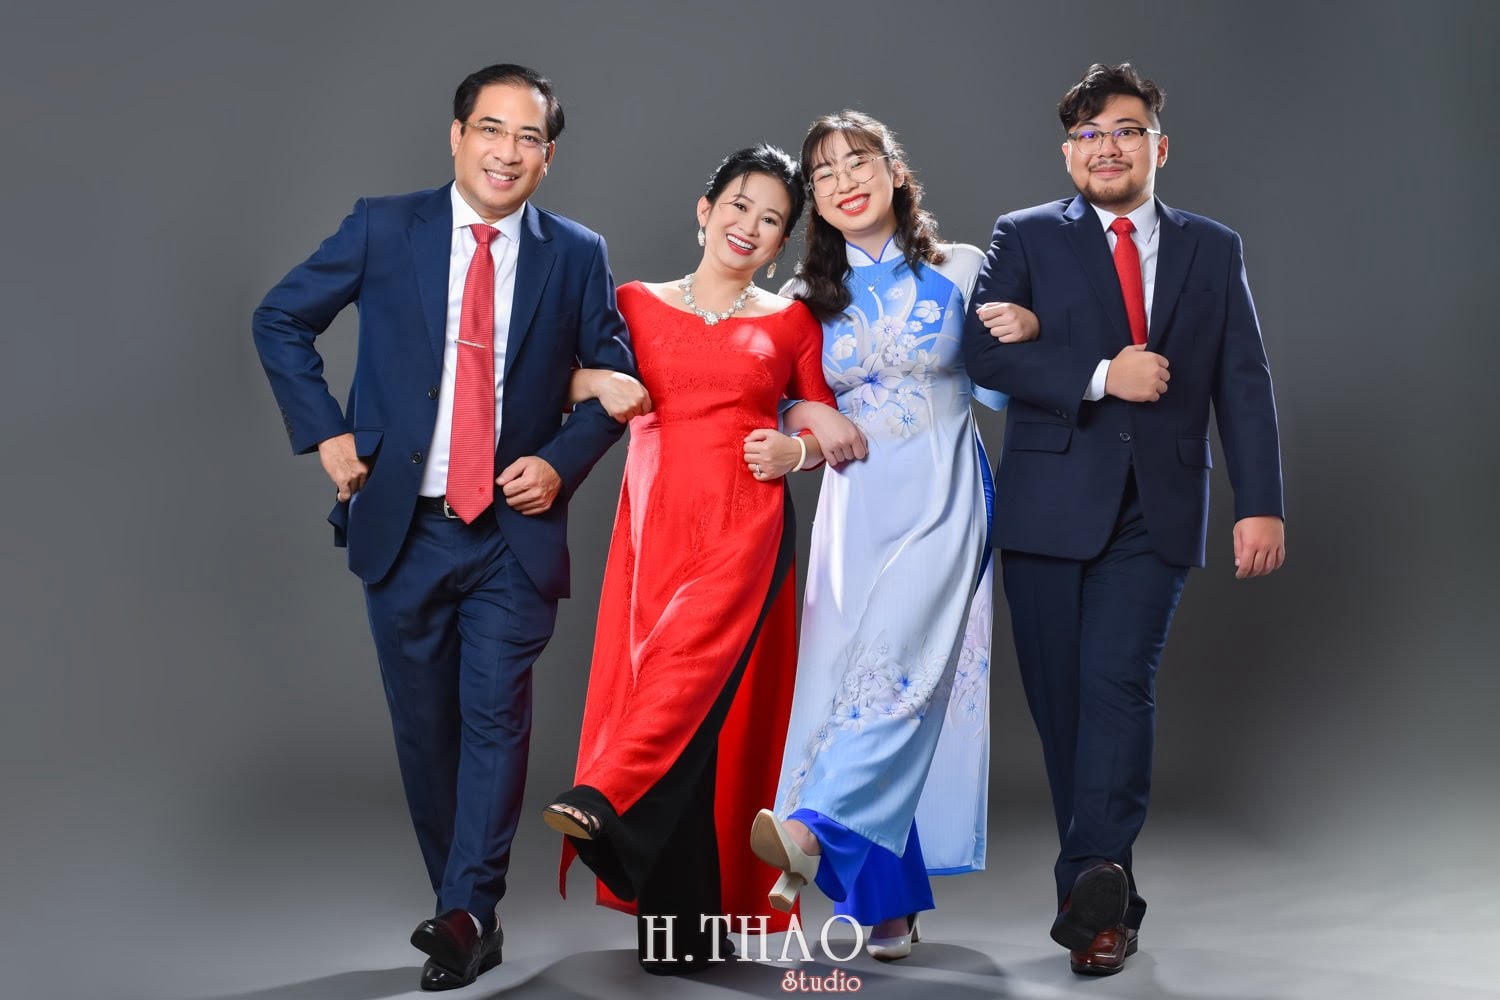 Anh gia dinh 4 nguoi 4 min - Studio chụp ảnh gia đình tự nhiên nhất tại Tp.HCM – HThao Studio